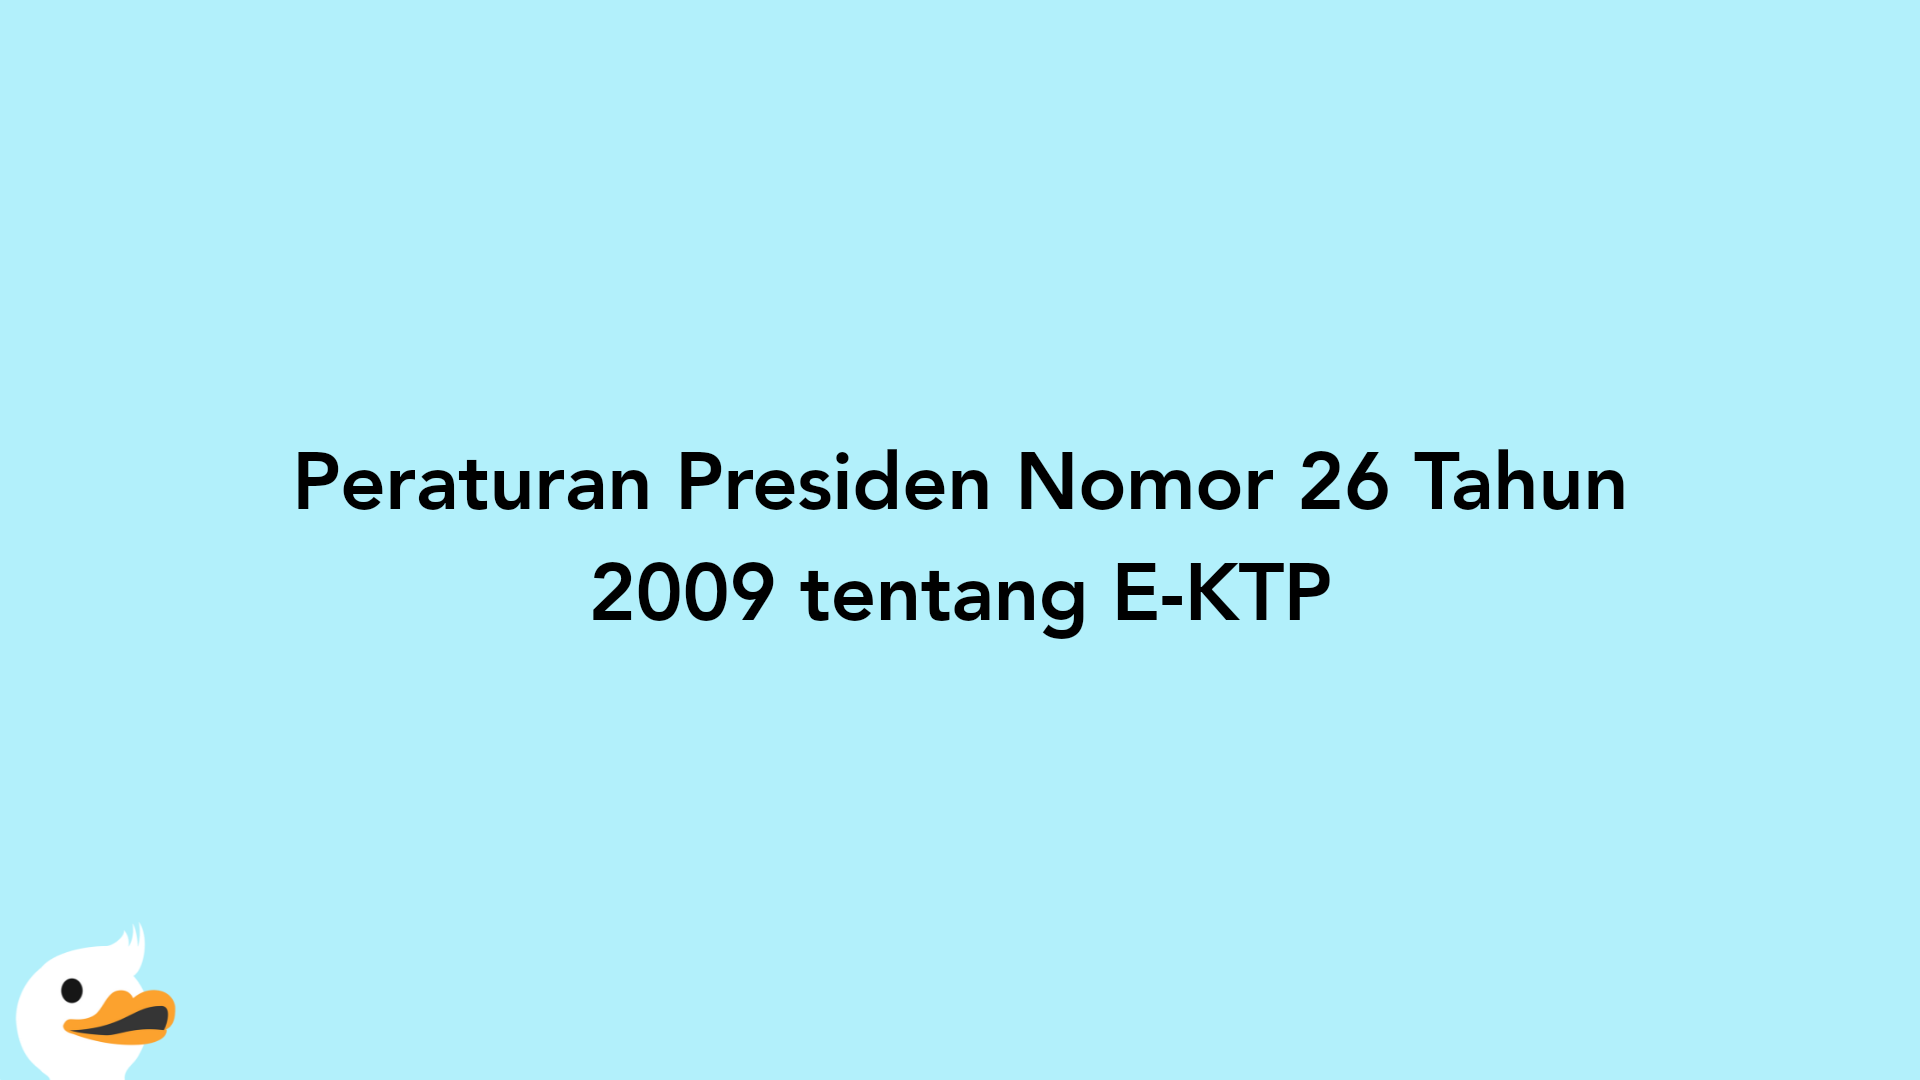 Peraturan Presiden Nomor 26 Tahun 2009 tentang E-KTP